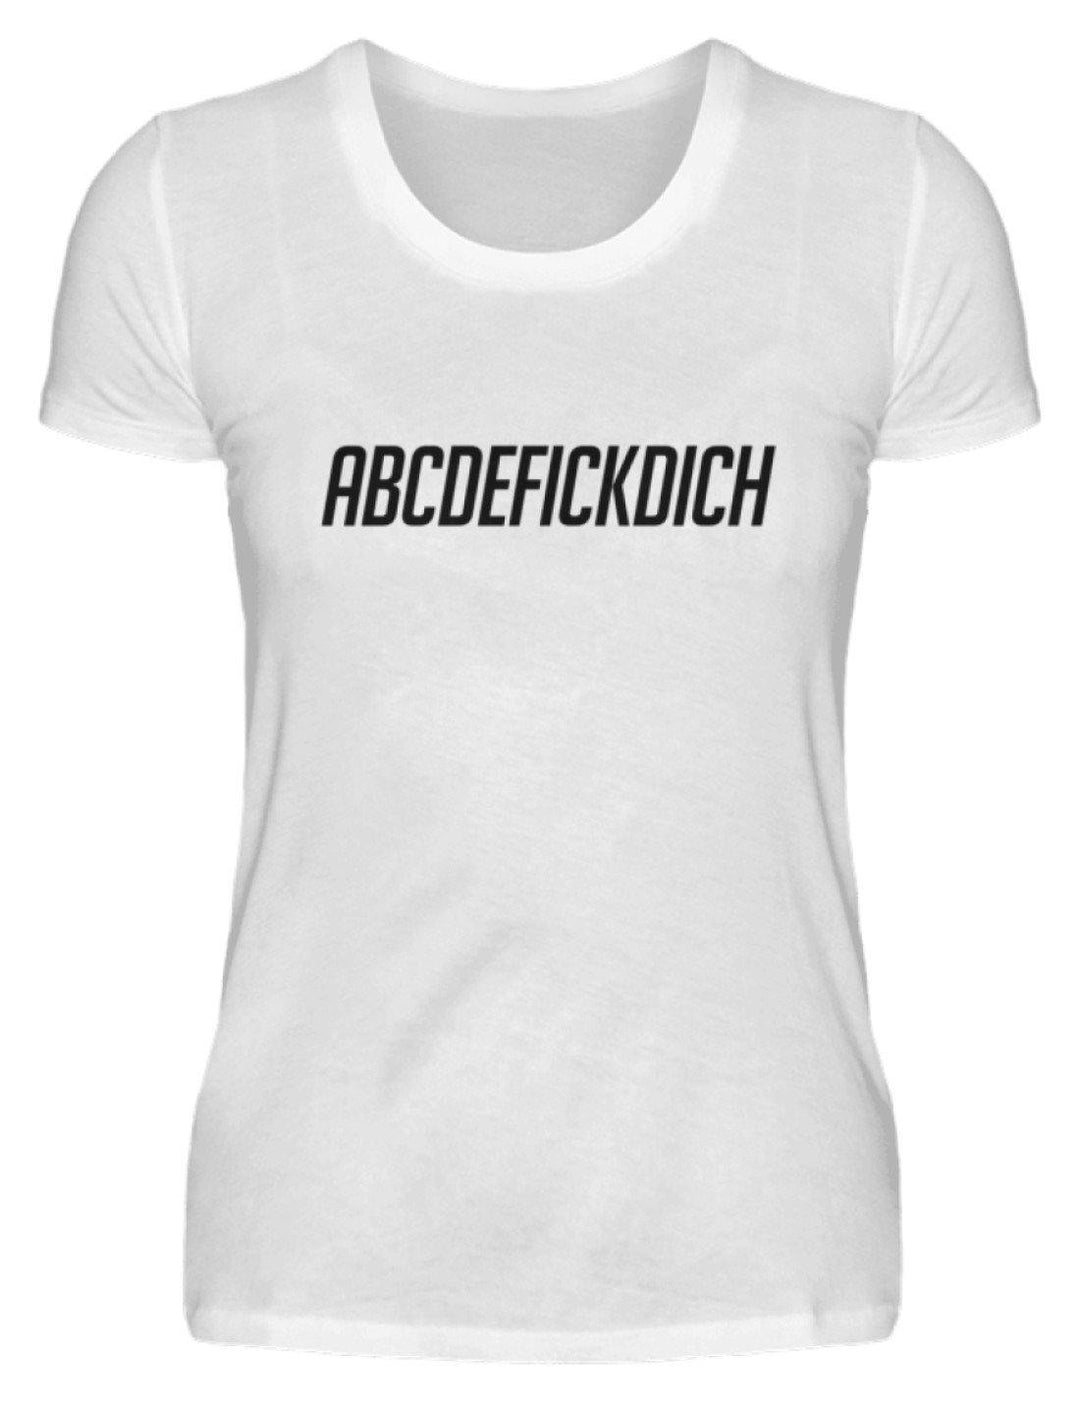 ABCDEF......... Words on Shirts  - Damenshirt - Words on Shirts Sag es mit dem Mittelfinger Shirts Hoodies Sweatshirt Taschen Gymsack Spruch Sprüche Statement